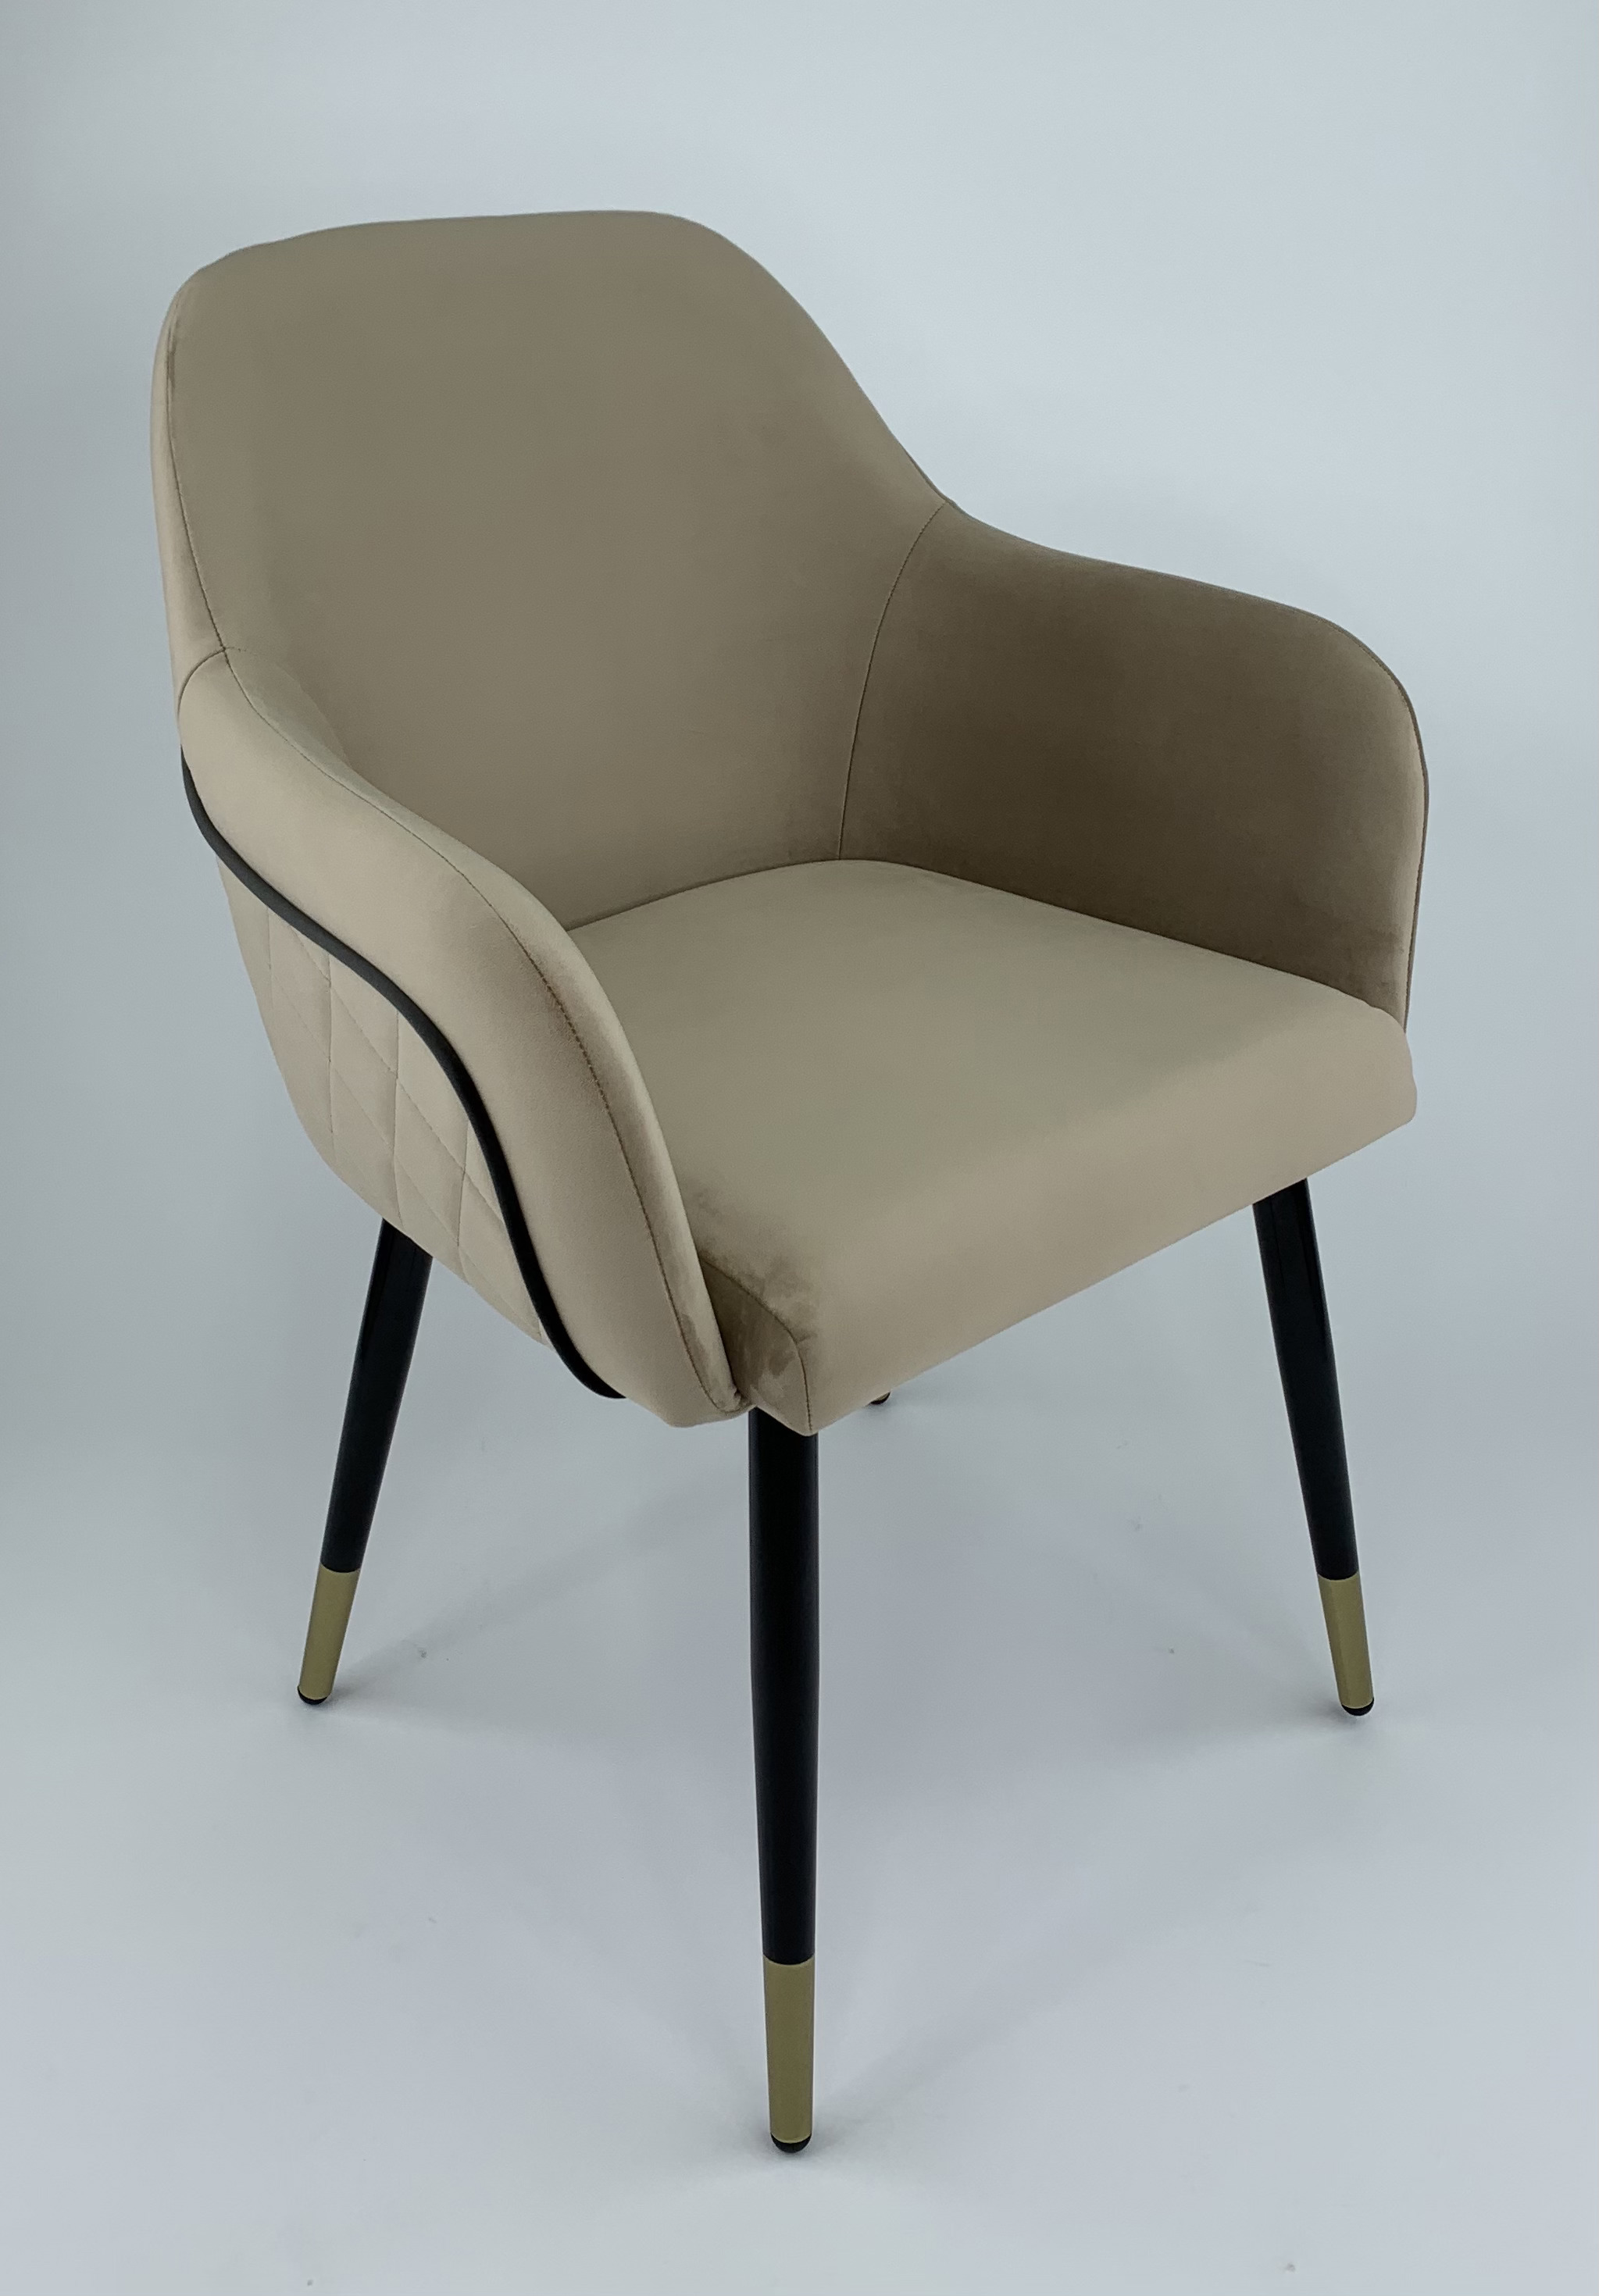 90203165 Стул-кресло мебель для кухни/гостинной/спальни цвет бежевый Венеция STLM-0131112 MILAVIO